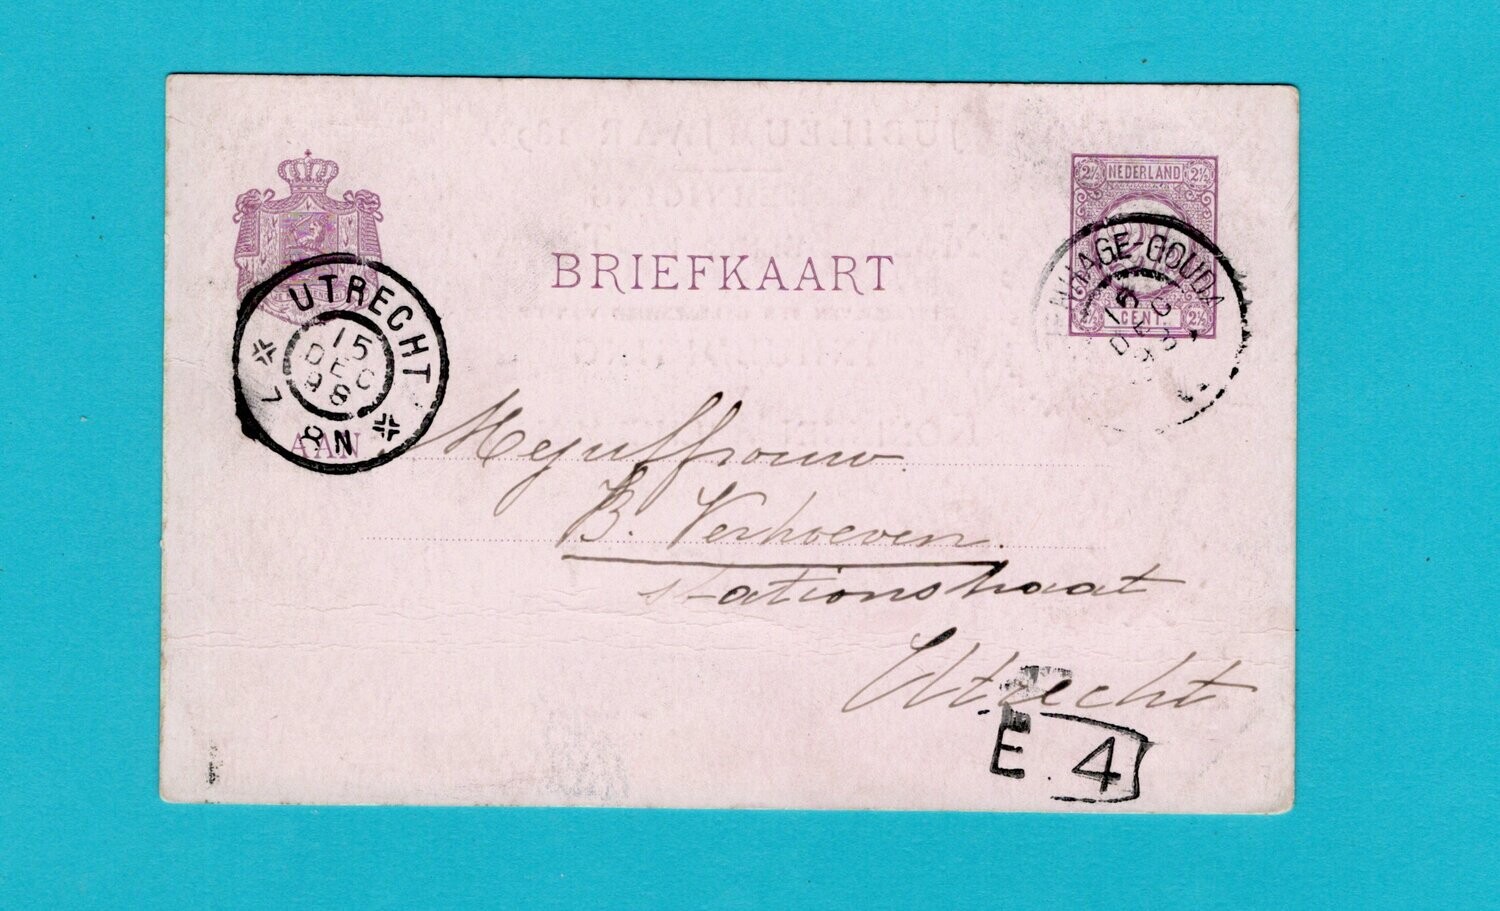 NEDERLAND jubileum briefkaart 1898 's Gravenhage-Gouda trein